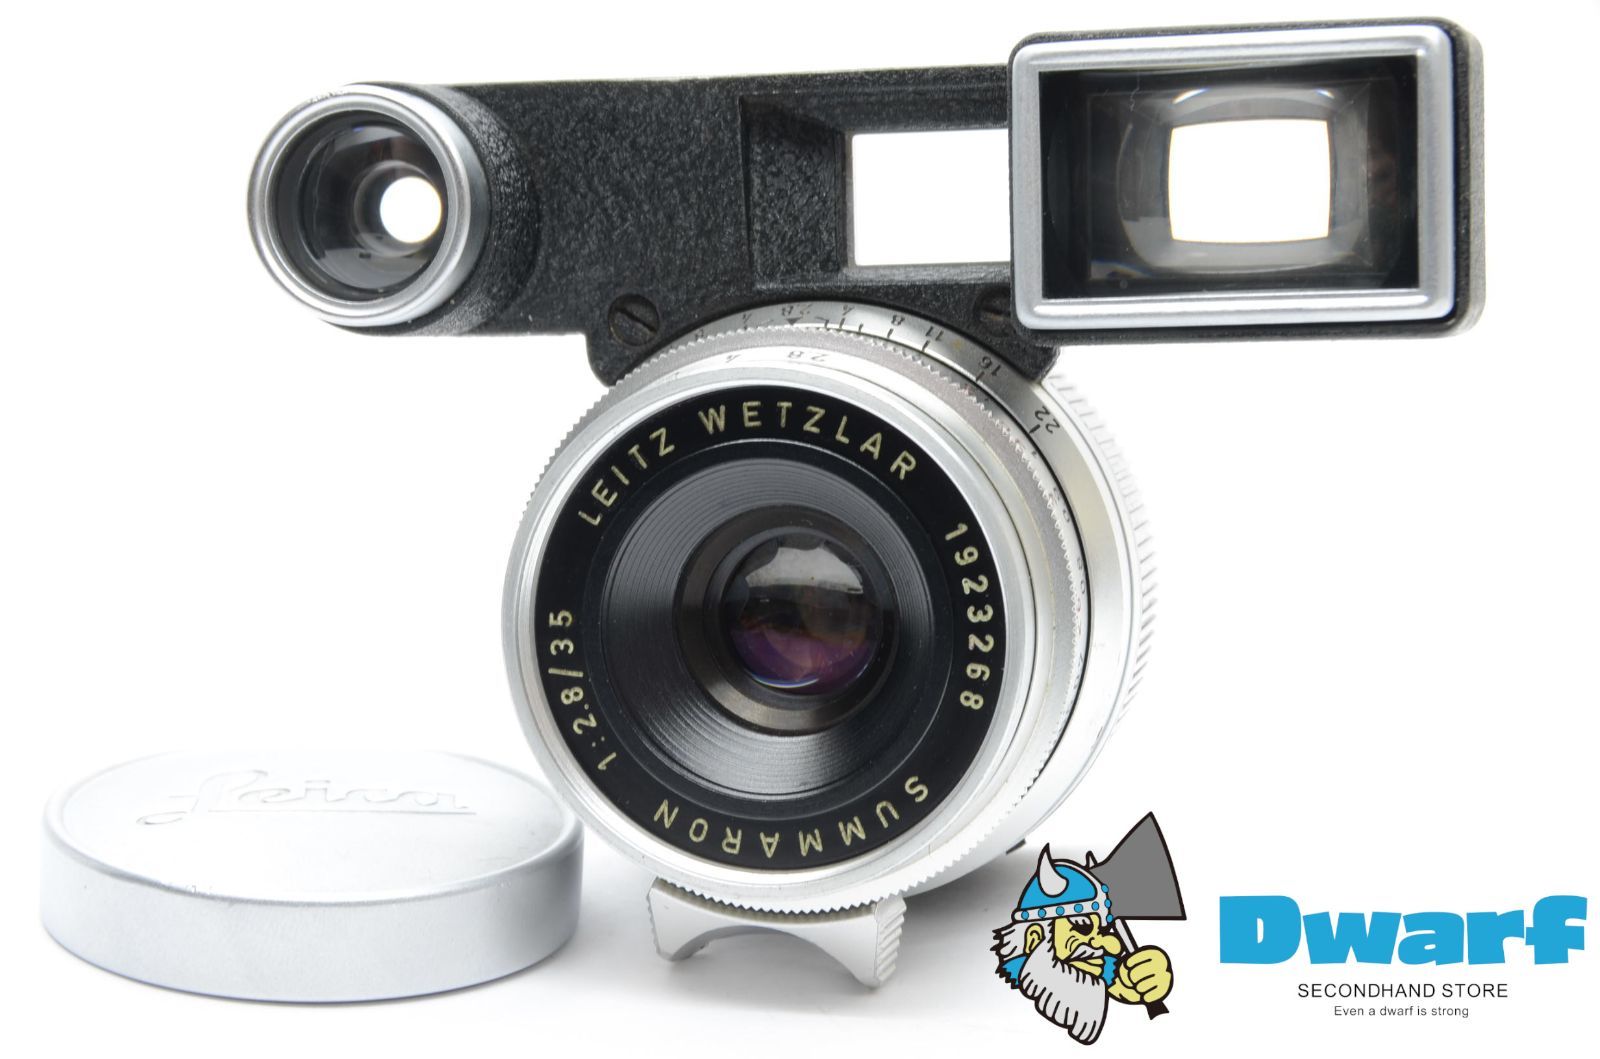 ライカ ズマロン Leica SUMMARON M 35mm F2.8 メガネ付 - Dwarf